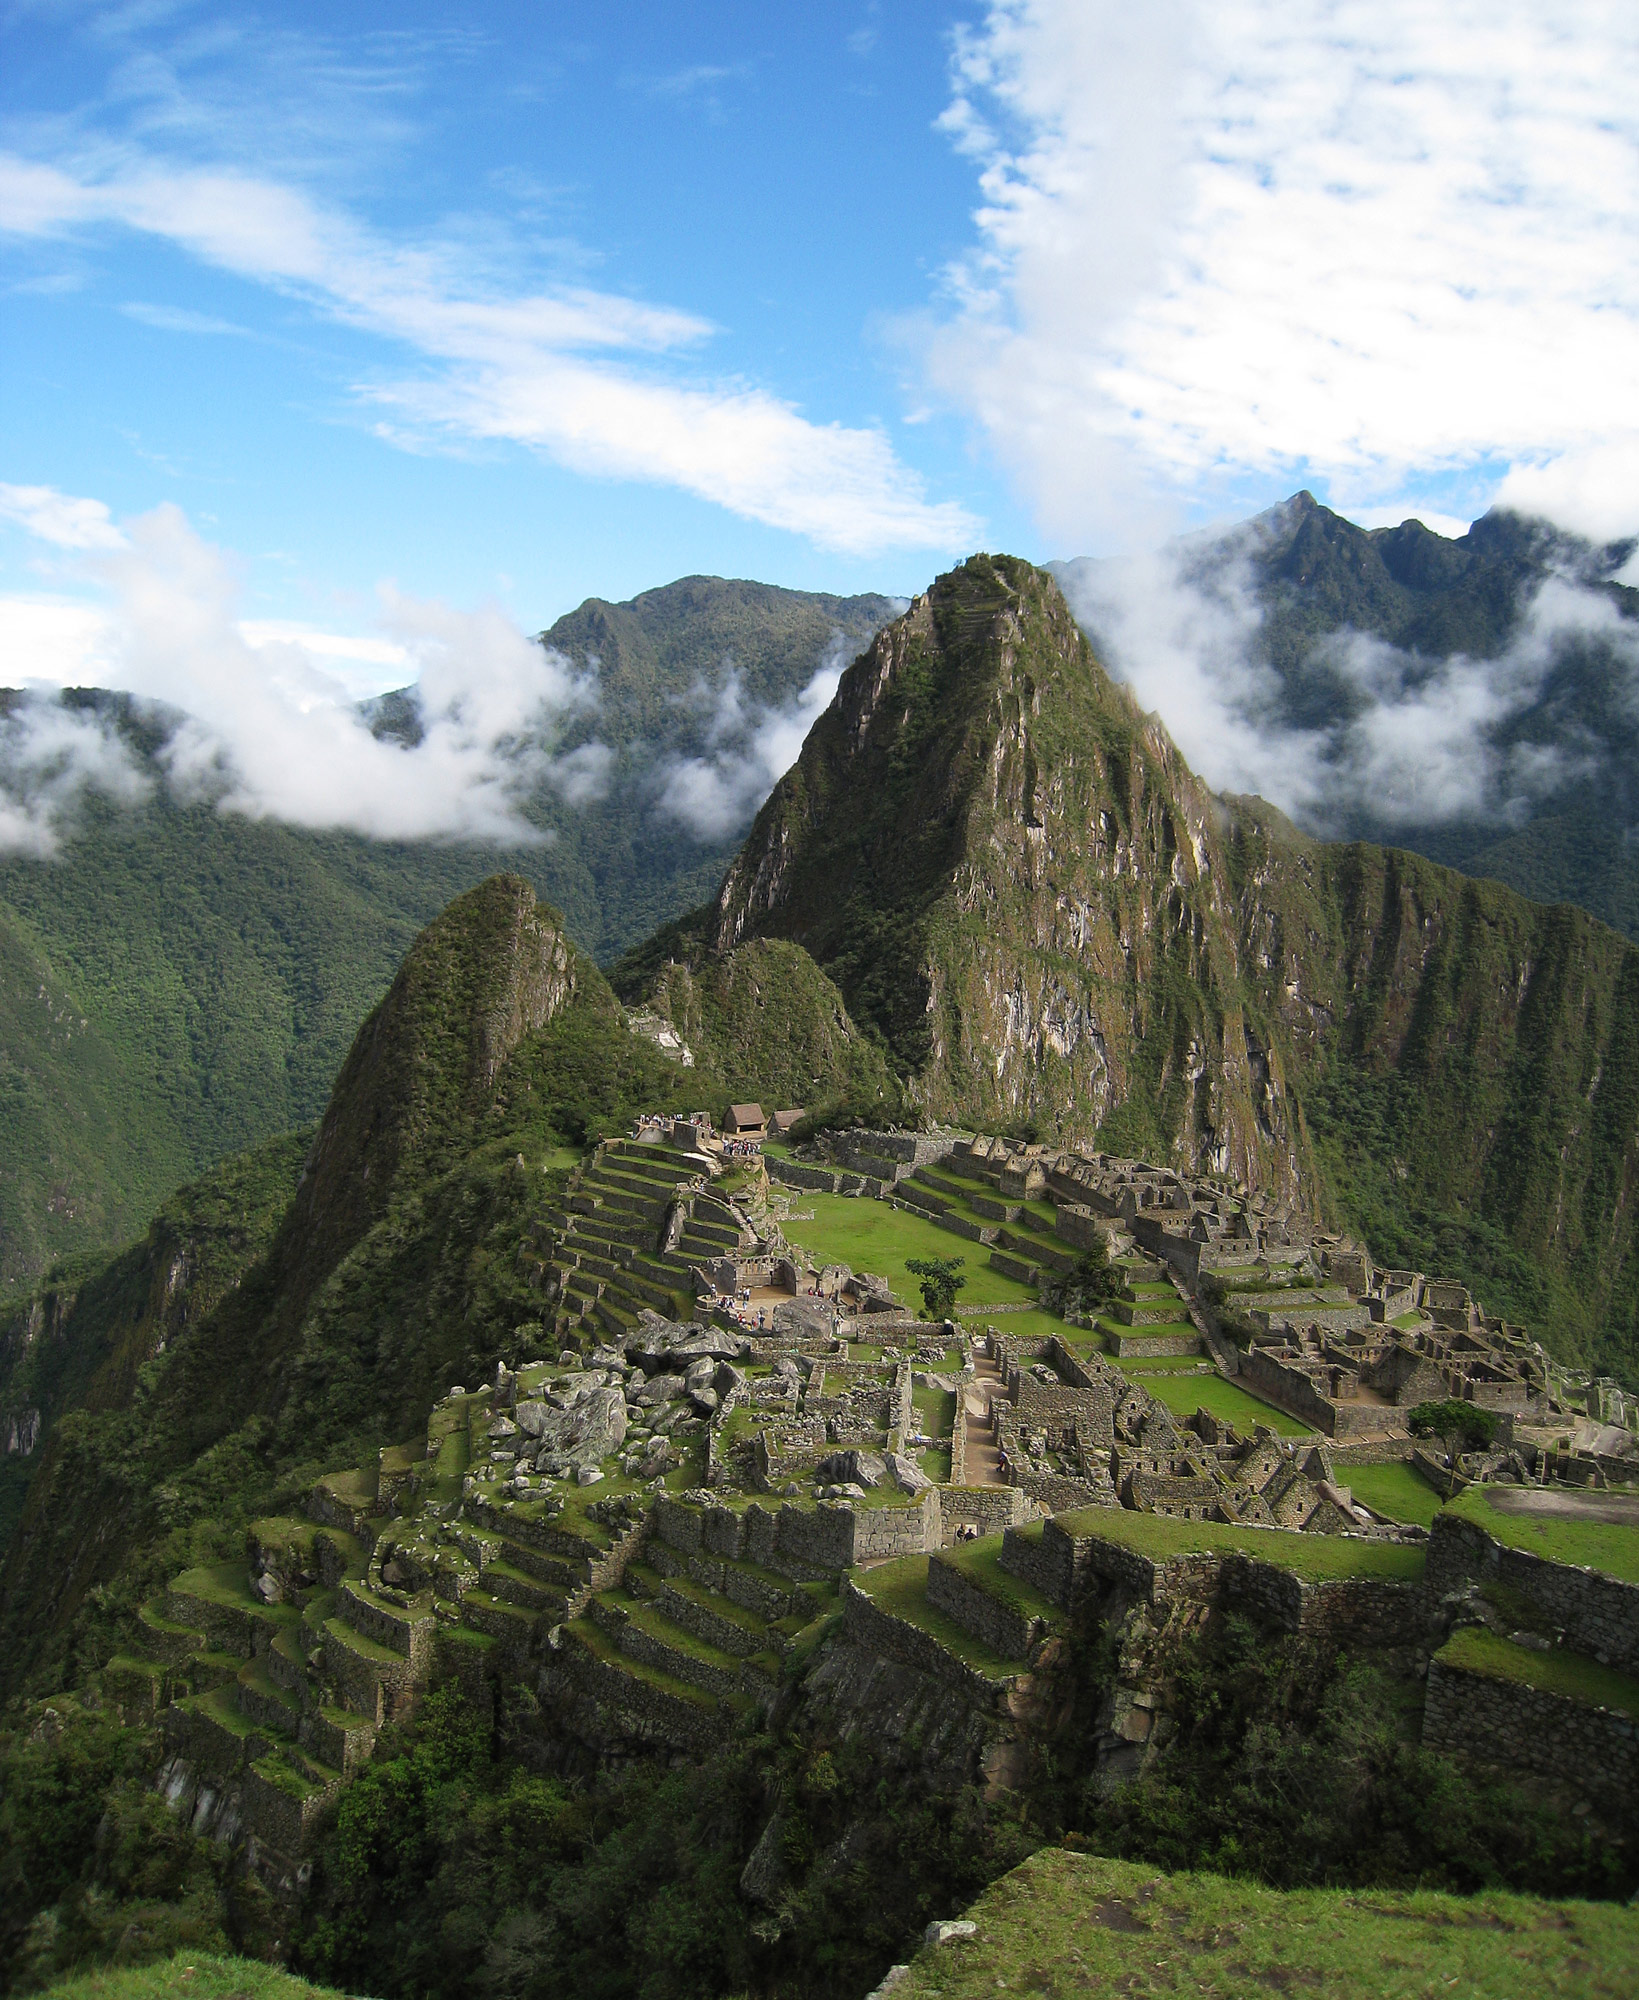 Les ruines anciennes les plus connues du Pérou, le Machu Picchu. Photo par l'utilisateur Flickr Icelight (CC BY).